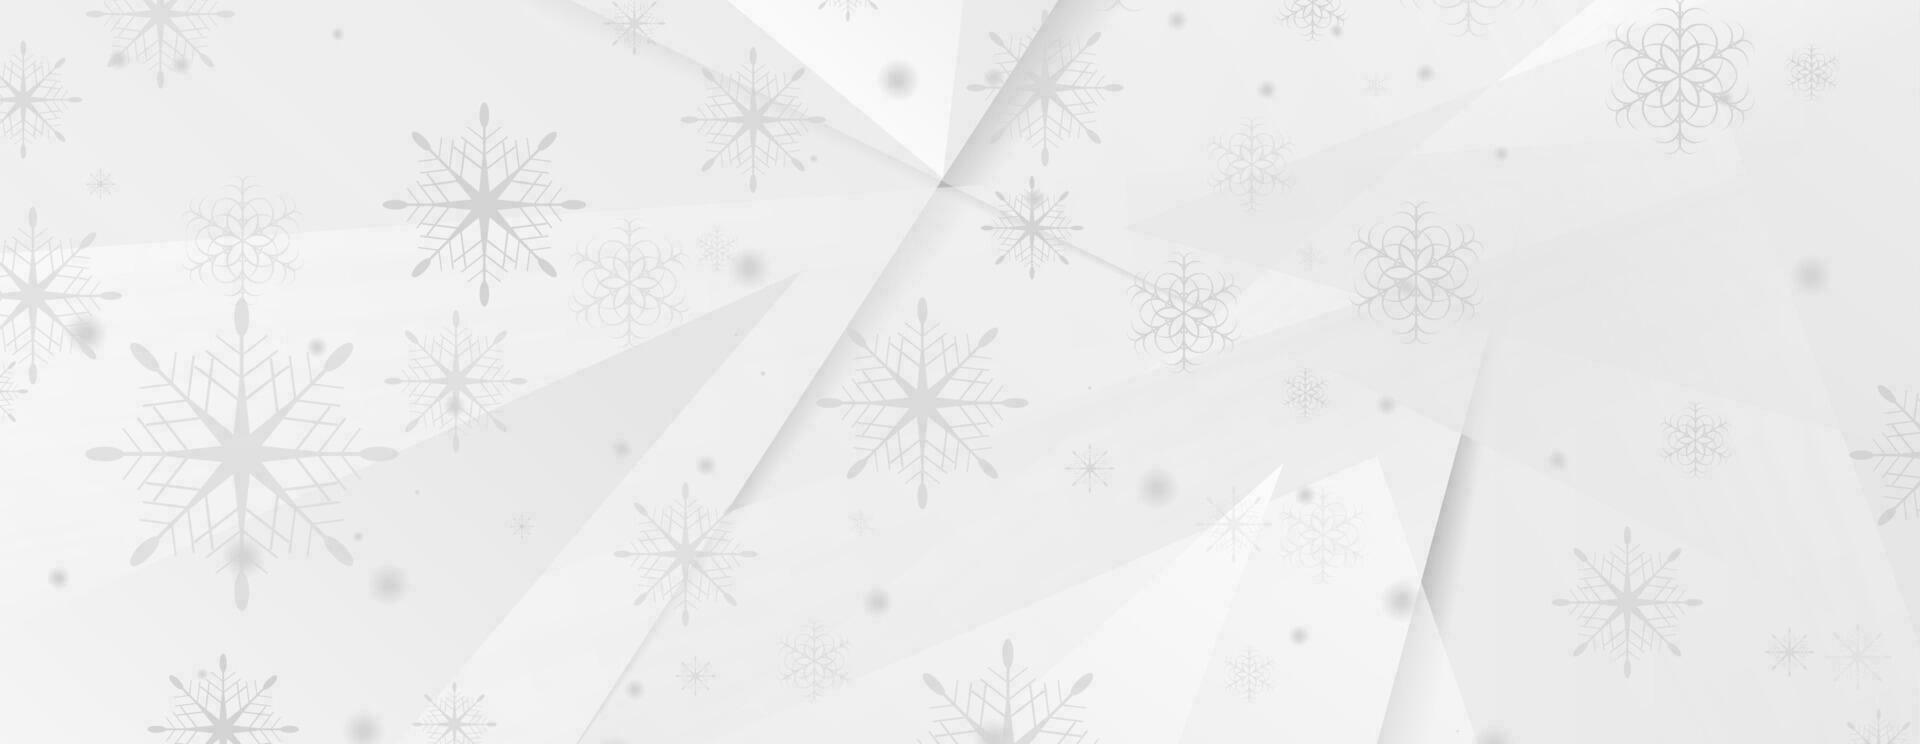 laag poly meetkundig Kerstmis winter achtergrond vector